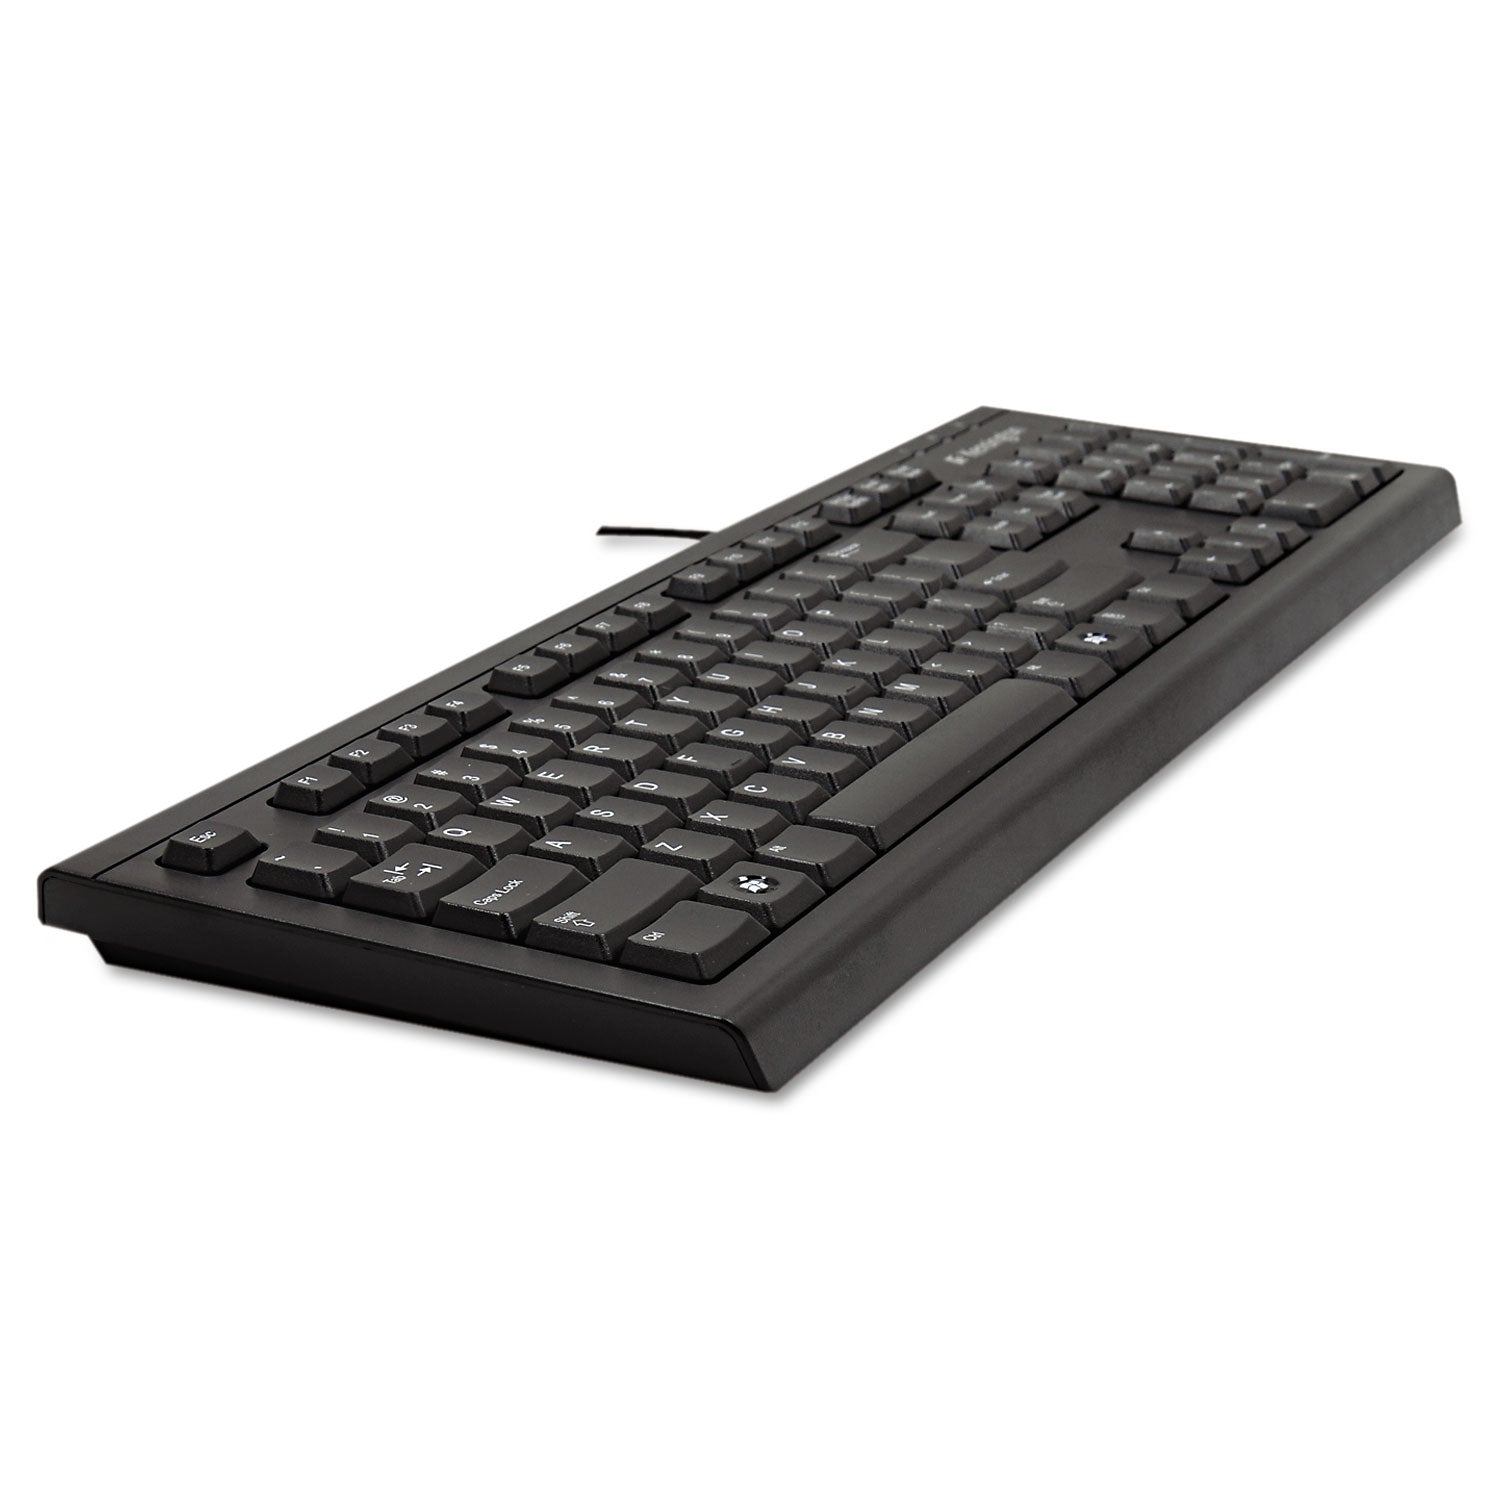 Keyboard for Life Slim Spill-Safe Keyboard, 104 Keys, Black - 